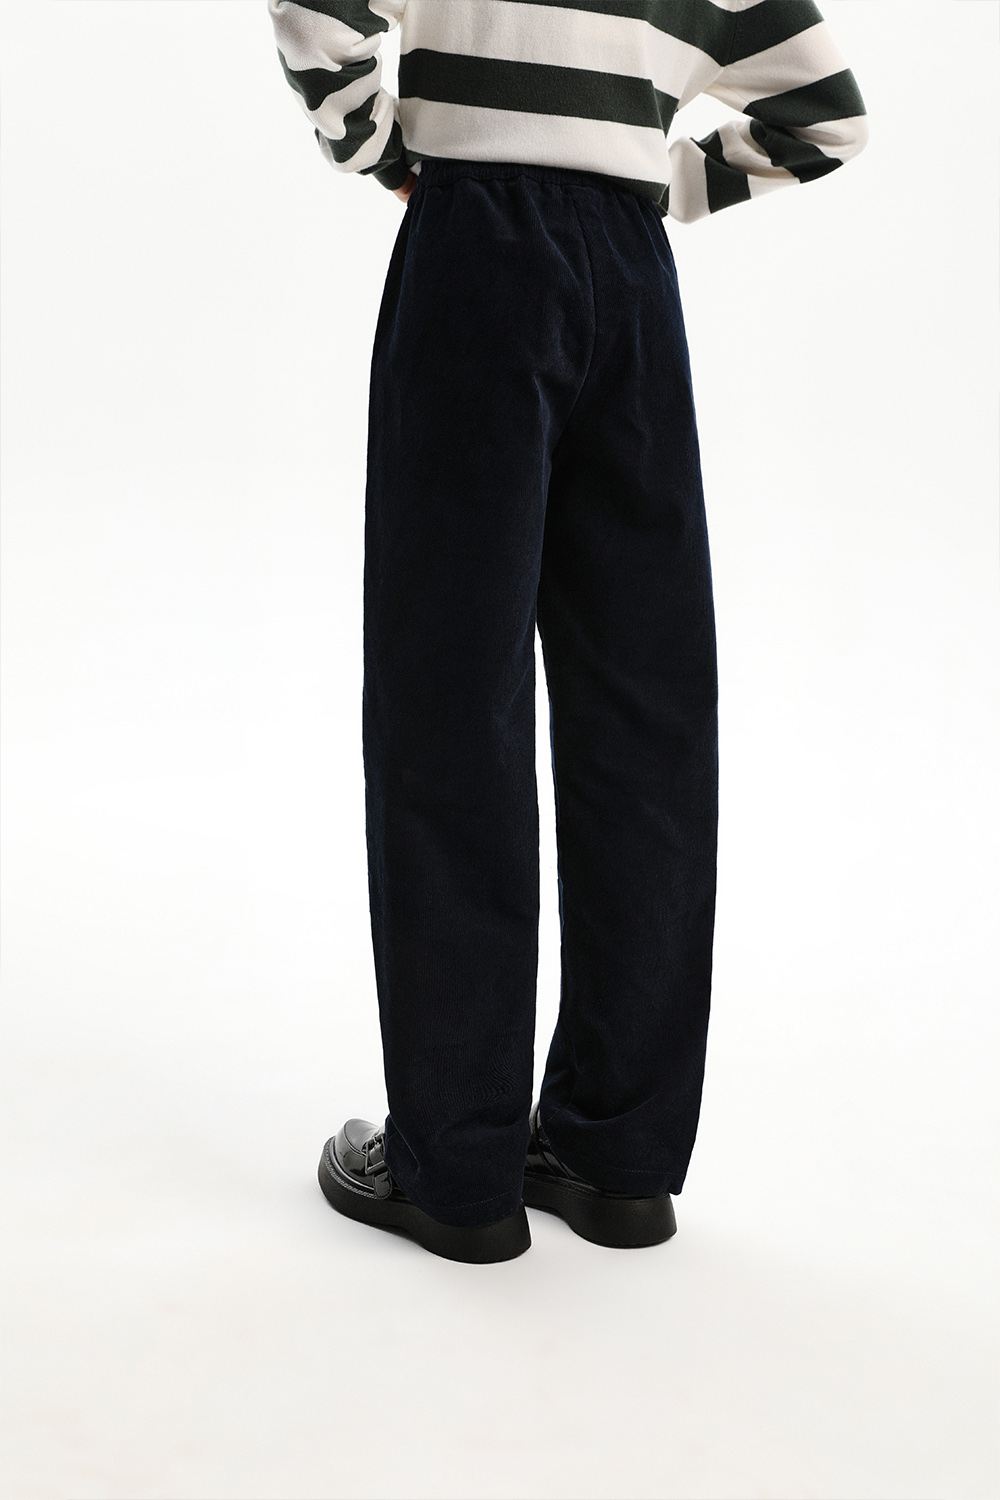 Хлопковые вельветовые брюки (SSLWG-329-26036-300) Silver Spoon